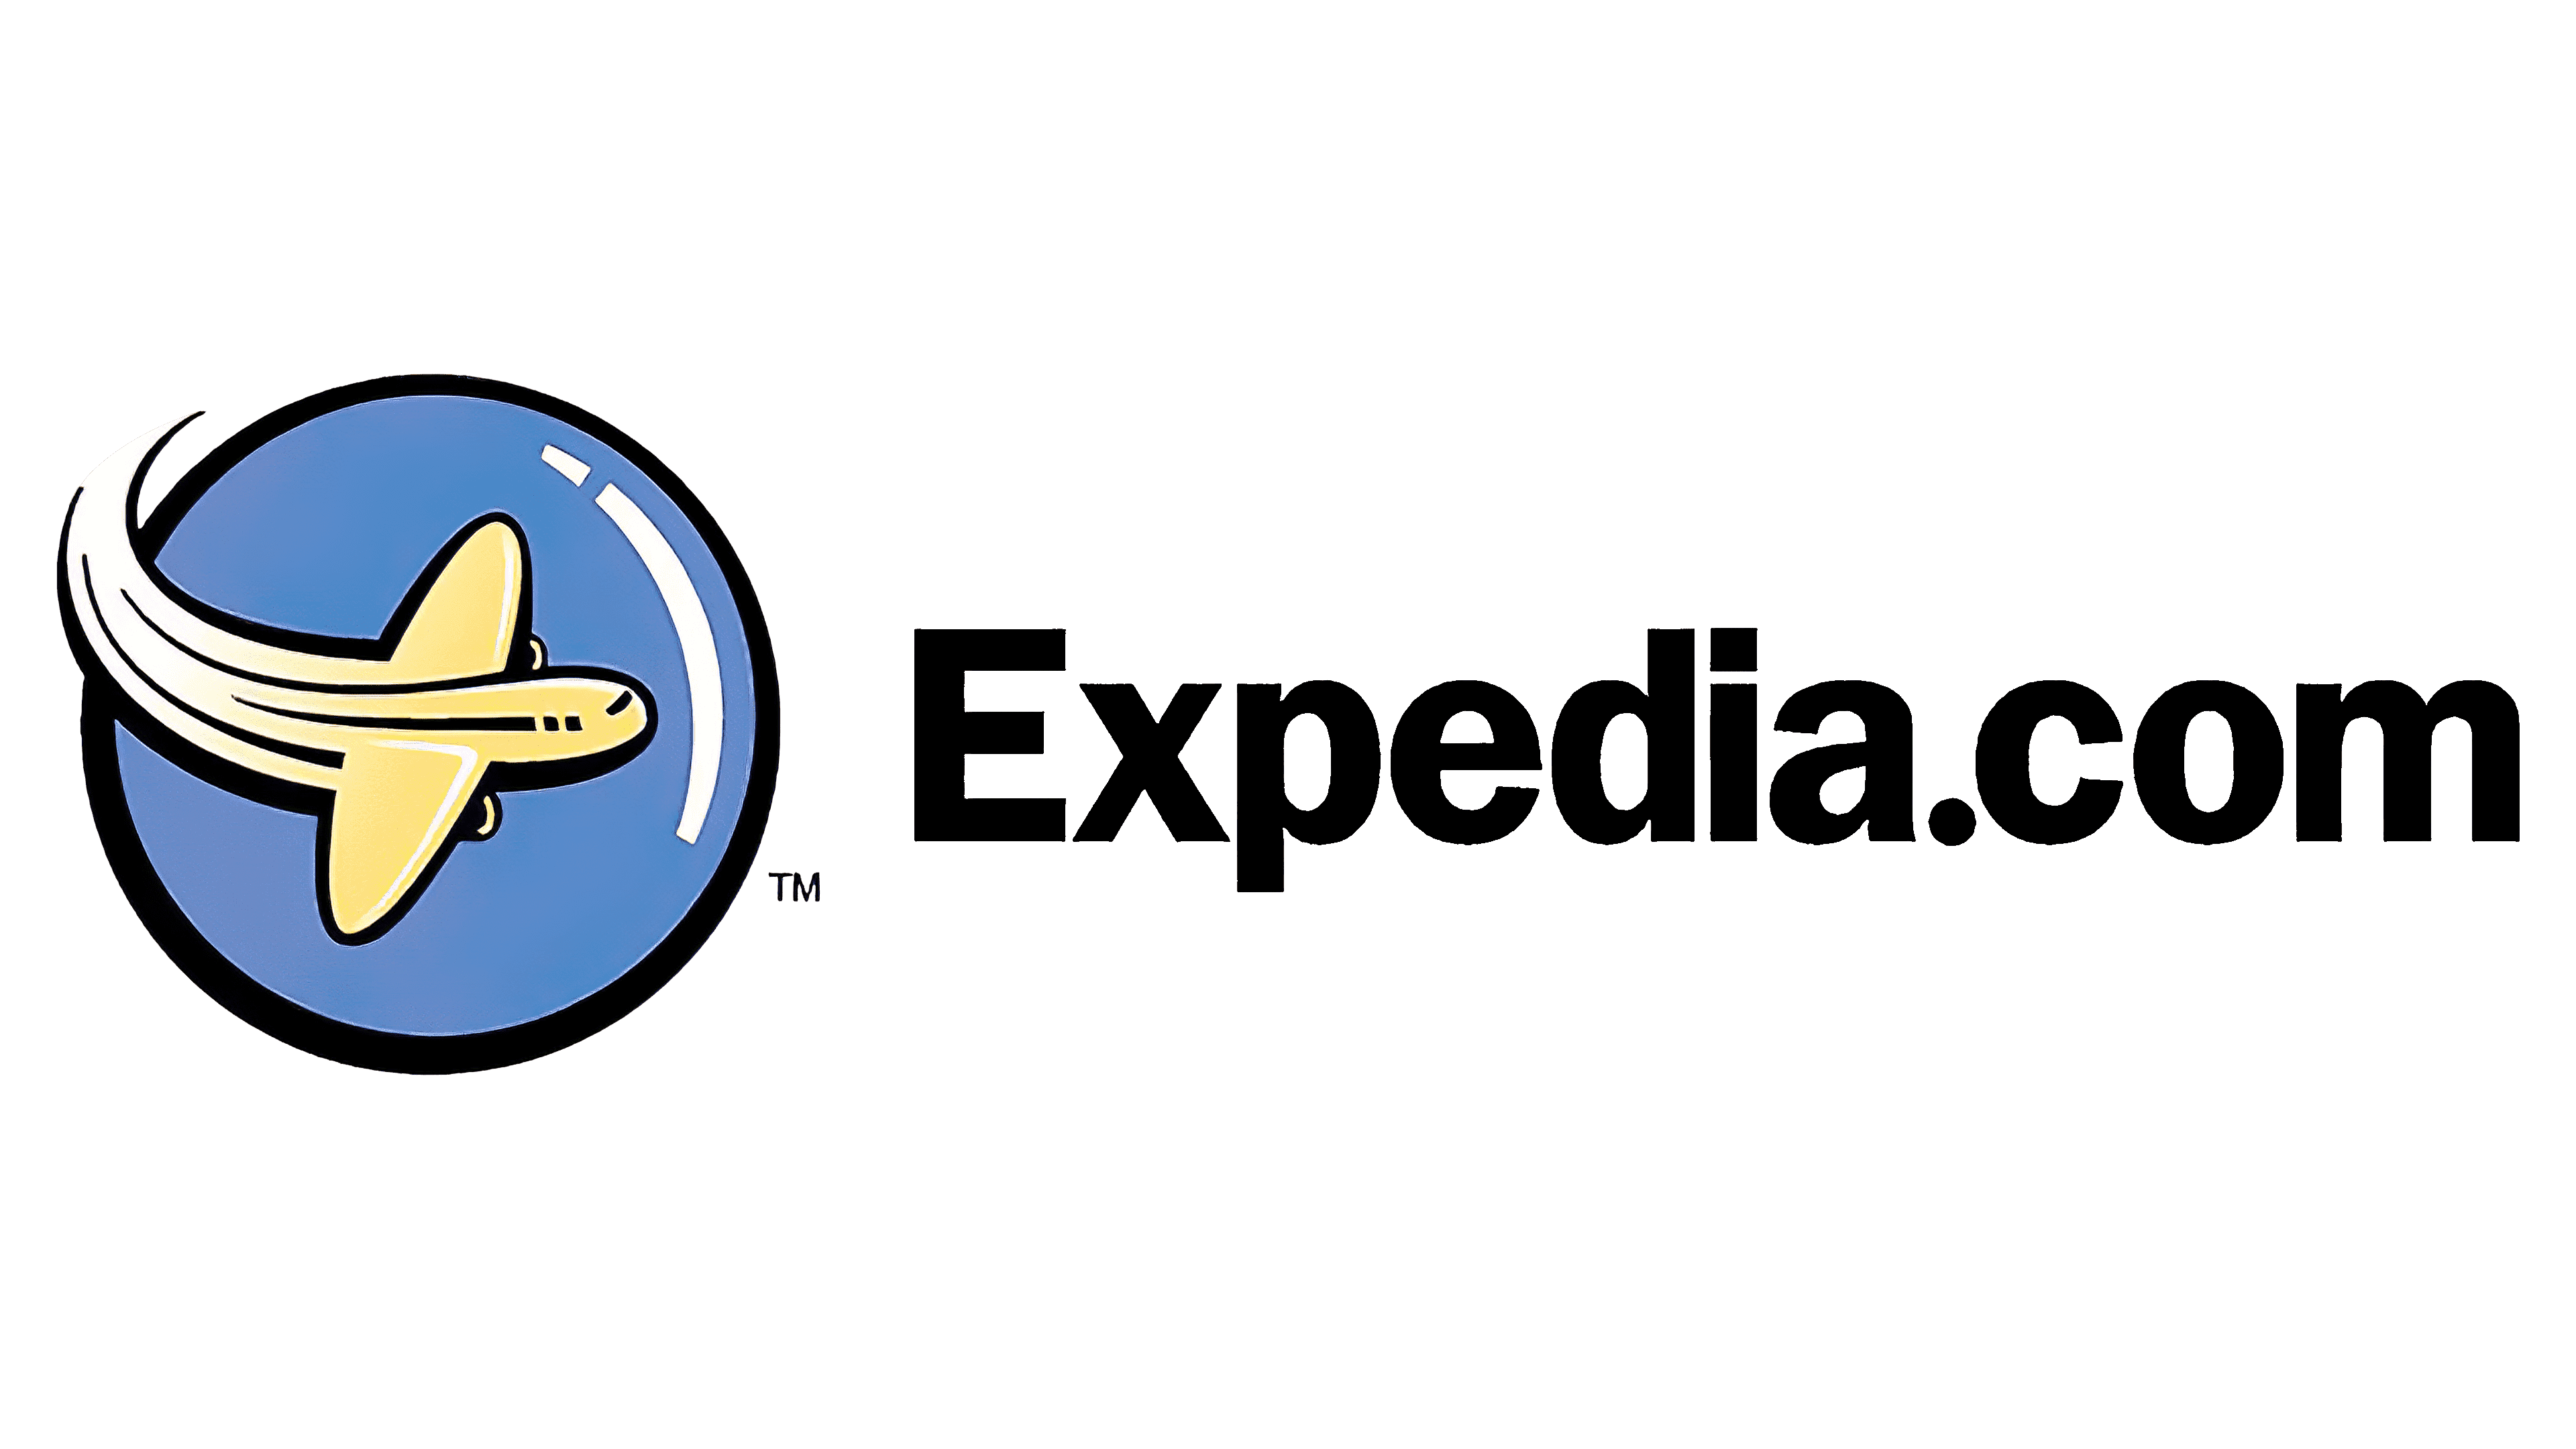 expedia.com travel insurance